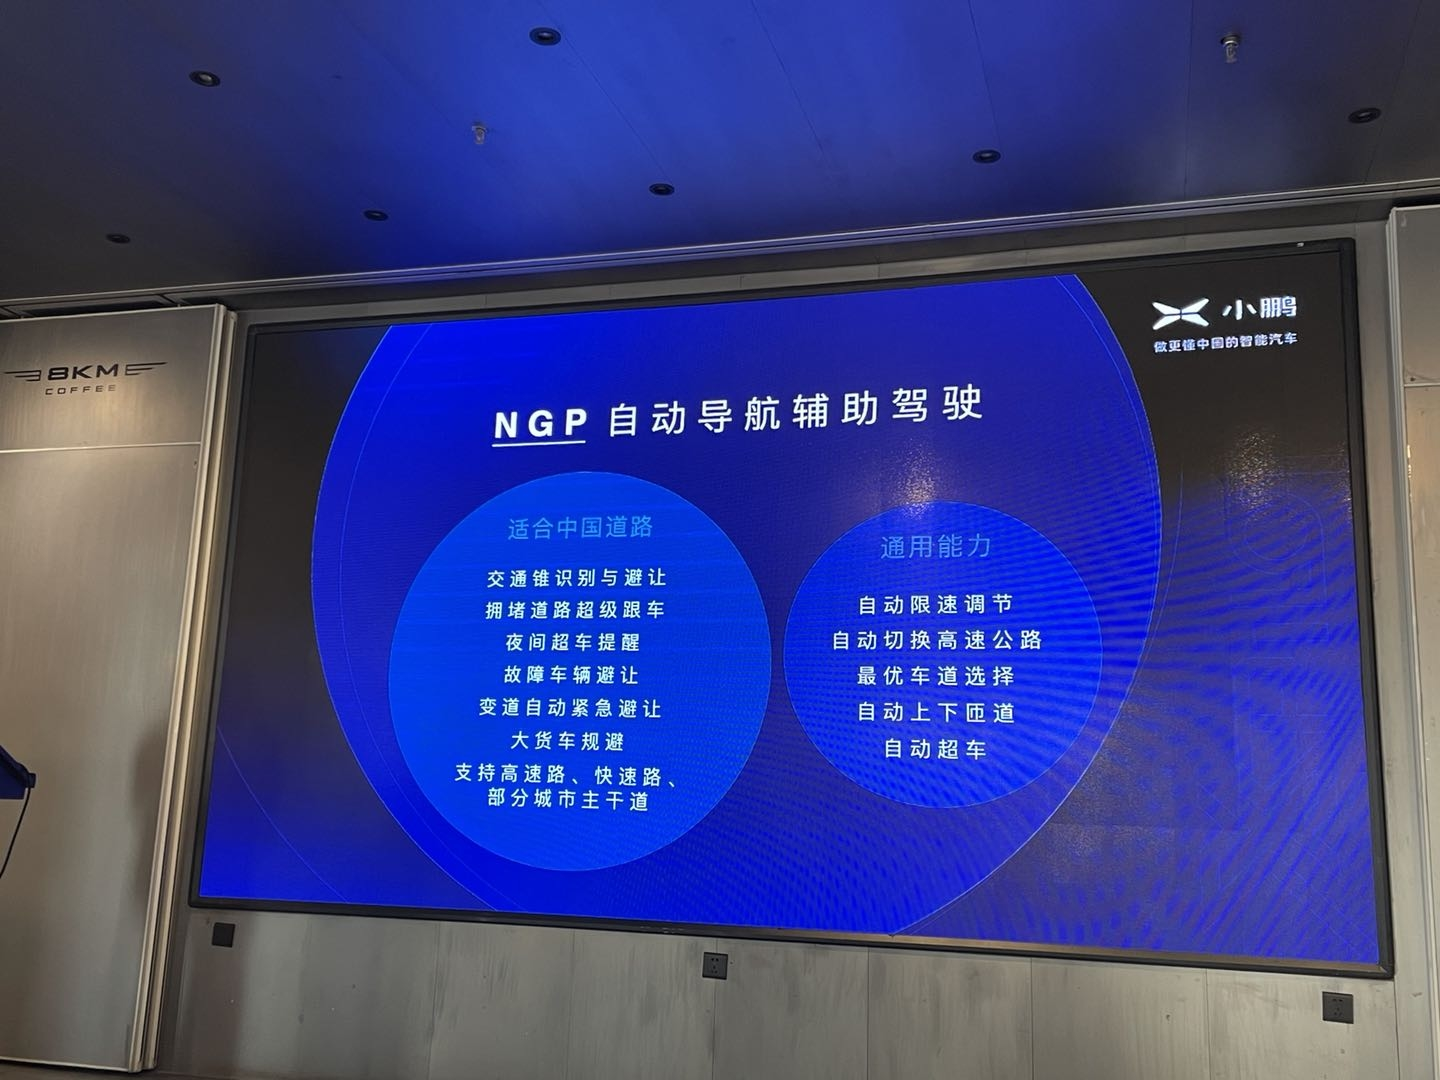 小鹏P7采用高德高精地图 NGP将于1月26日推送